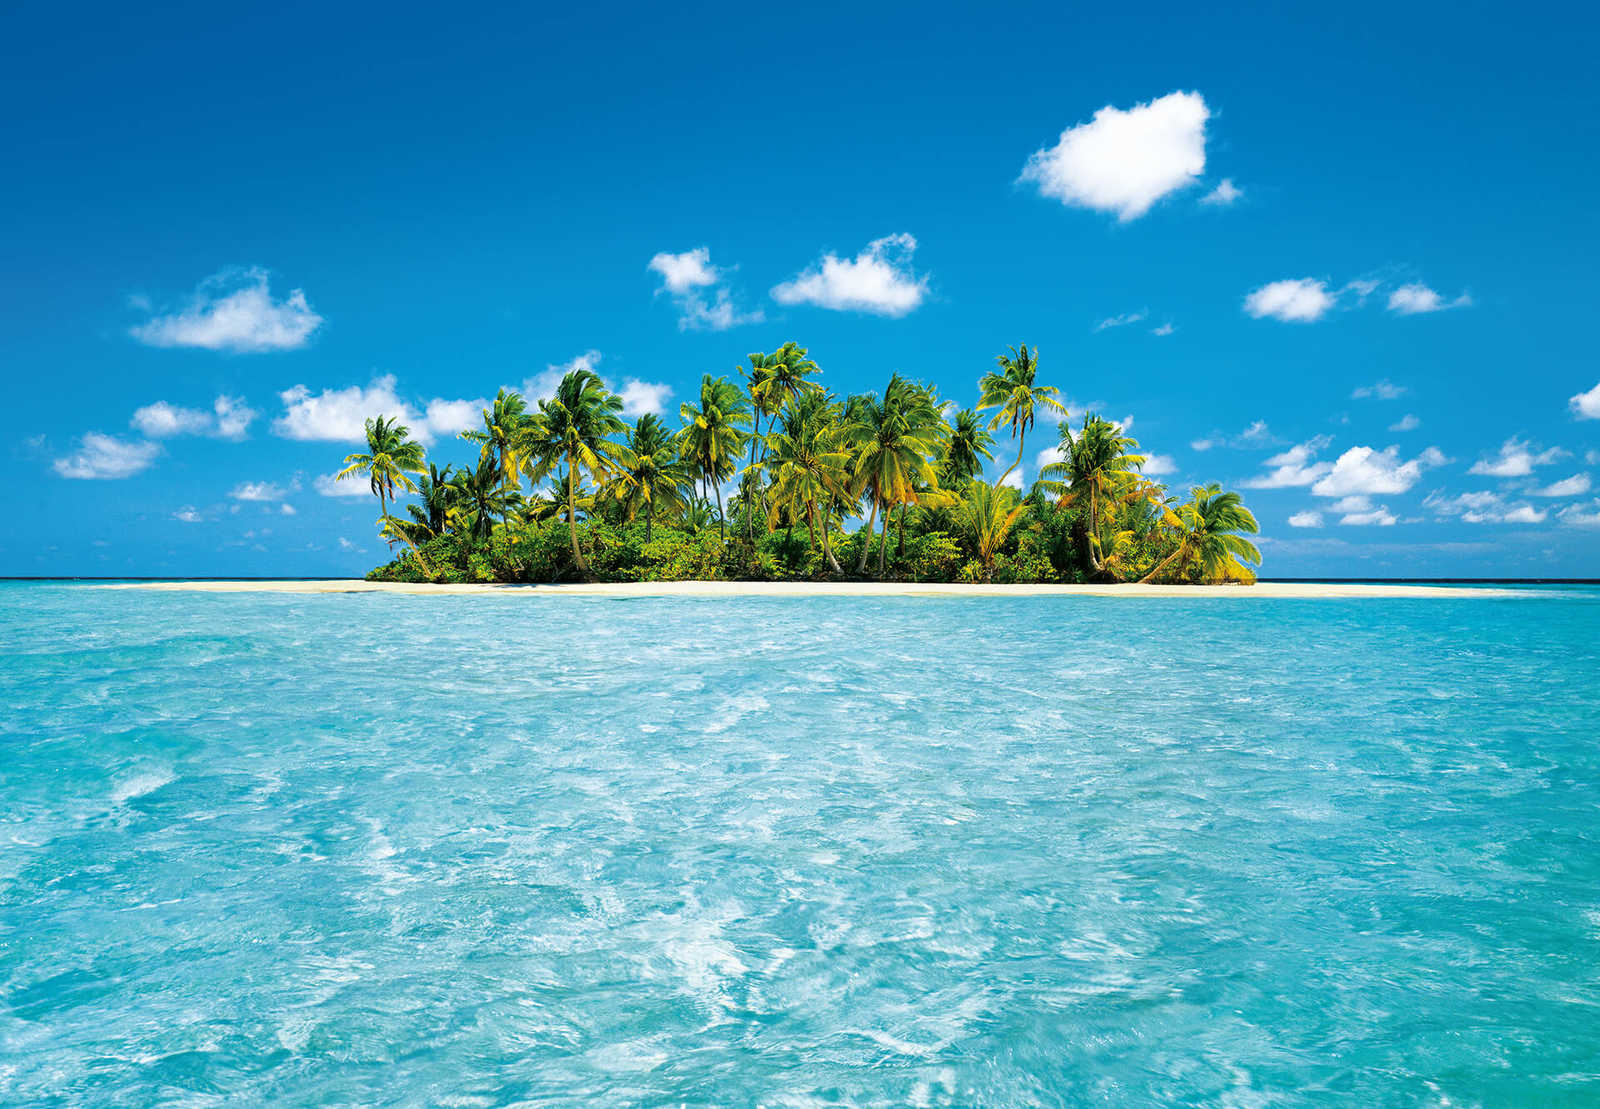         Blaue Südsee Fototapete Malediven Insel & Meer
    